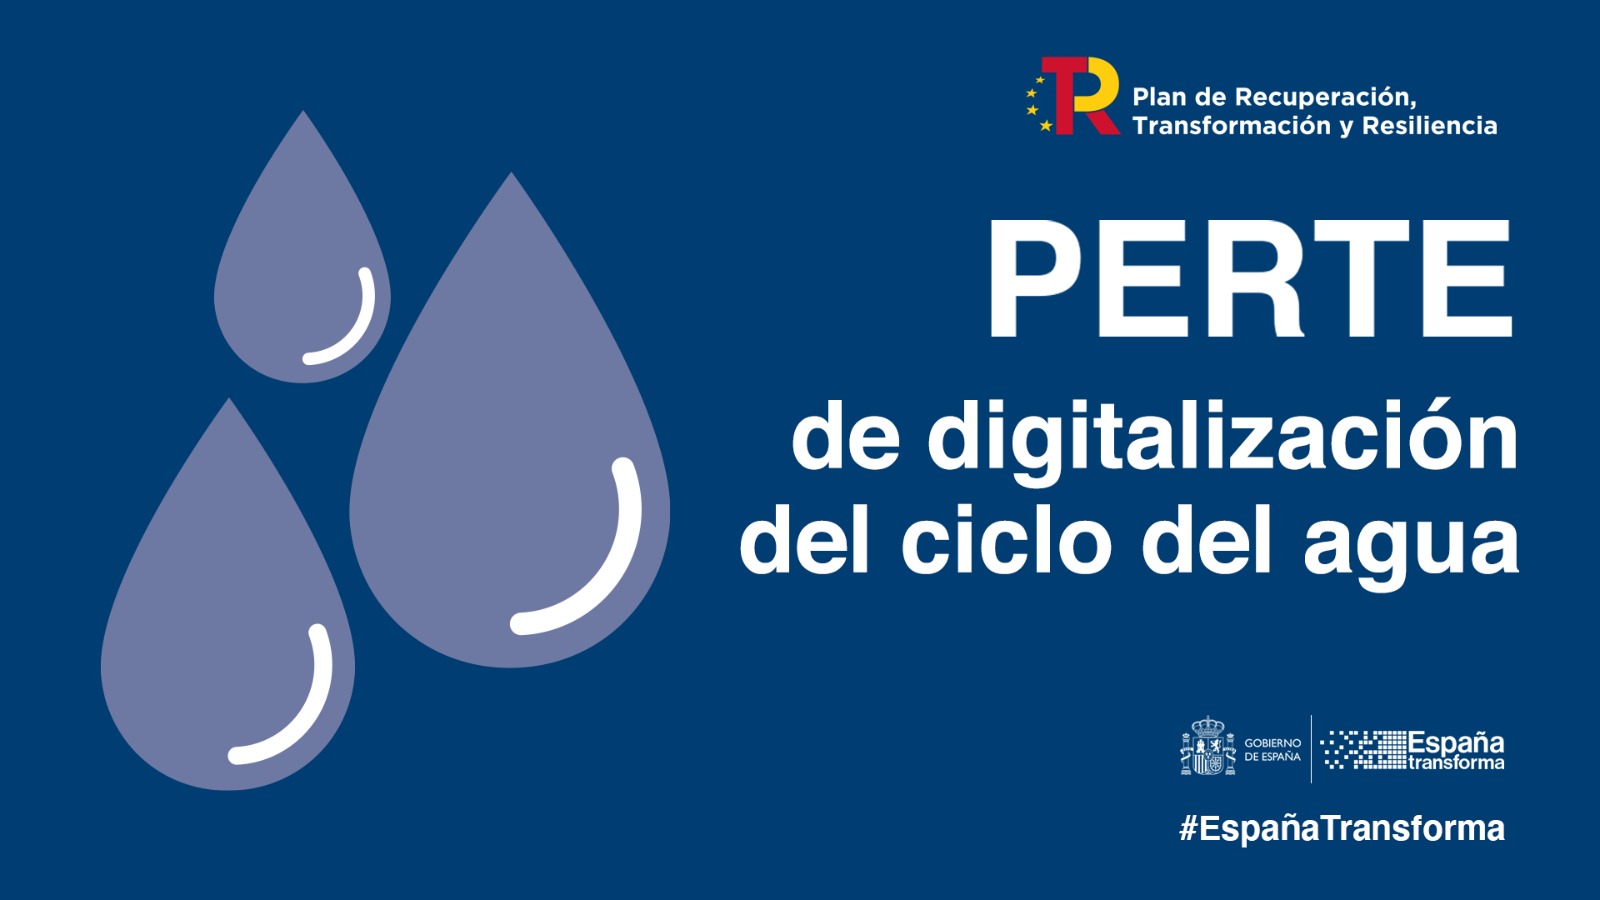 PERTE AGUAEl Gobierno aprueba el PERTE de Digitalización del Ciclo del Agua para modernizar el sector y avanzar hacia una gestión más eficiente y sostenible